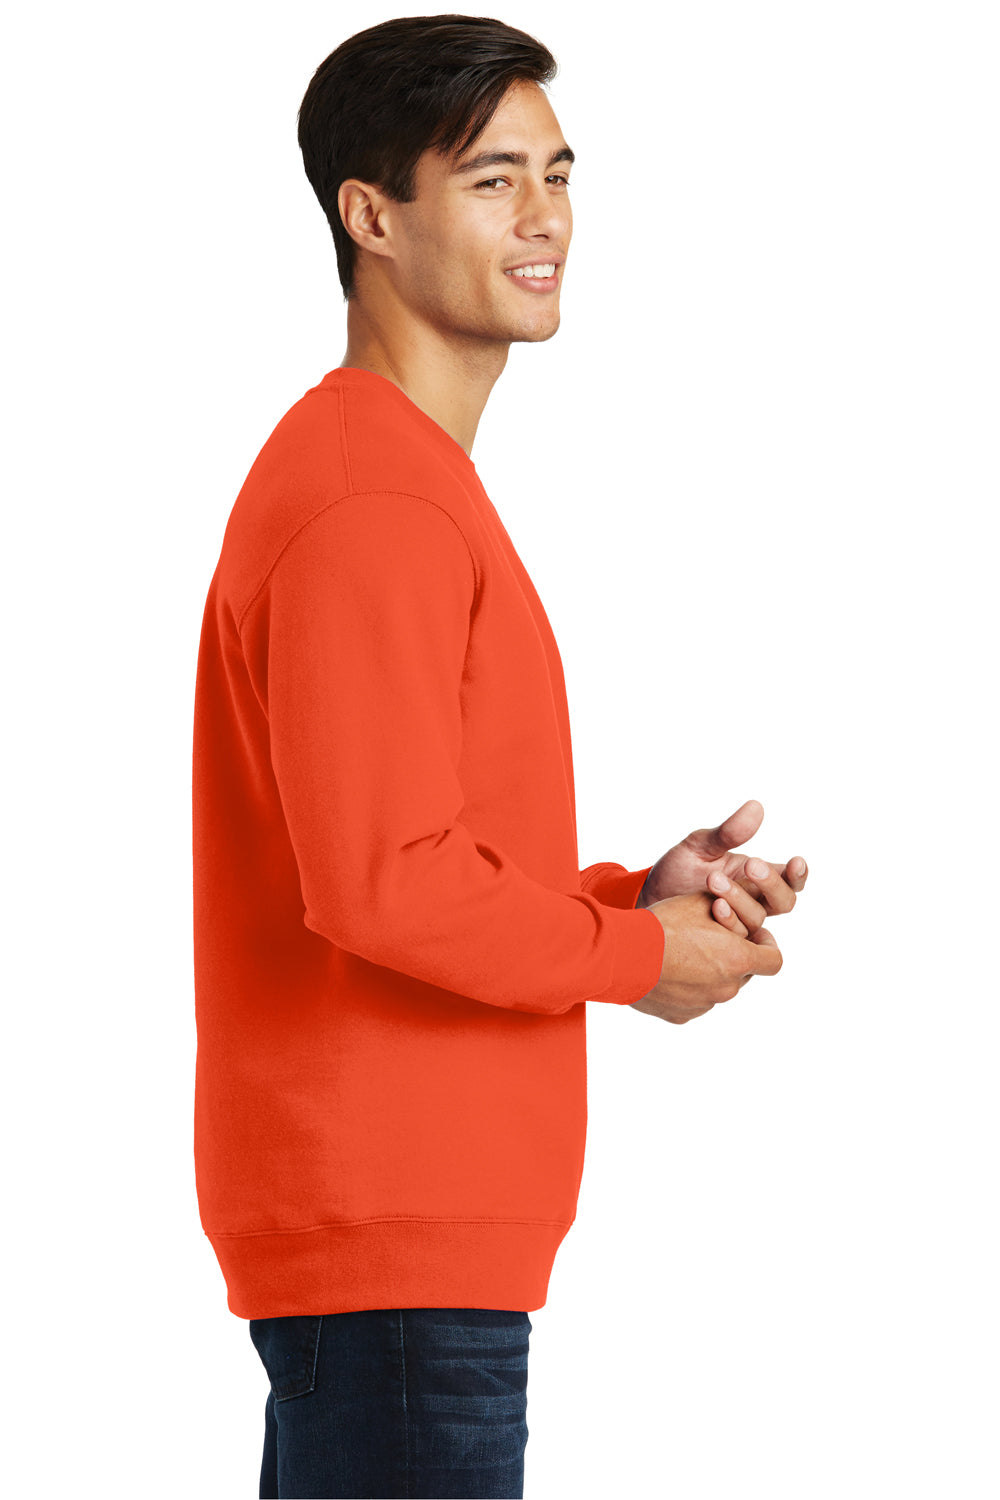 Port & Company PC850 Mens Fan Favorite Fleece Crewneck Sweatshirt Orange Side